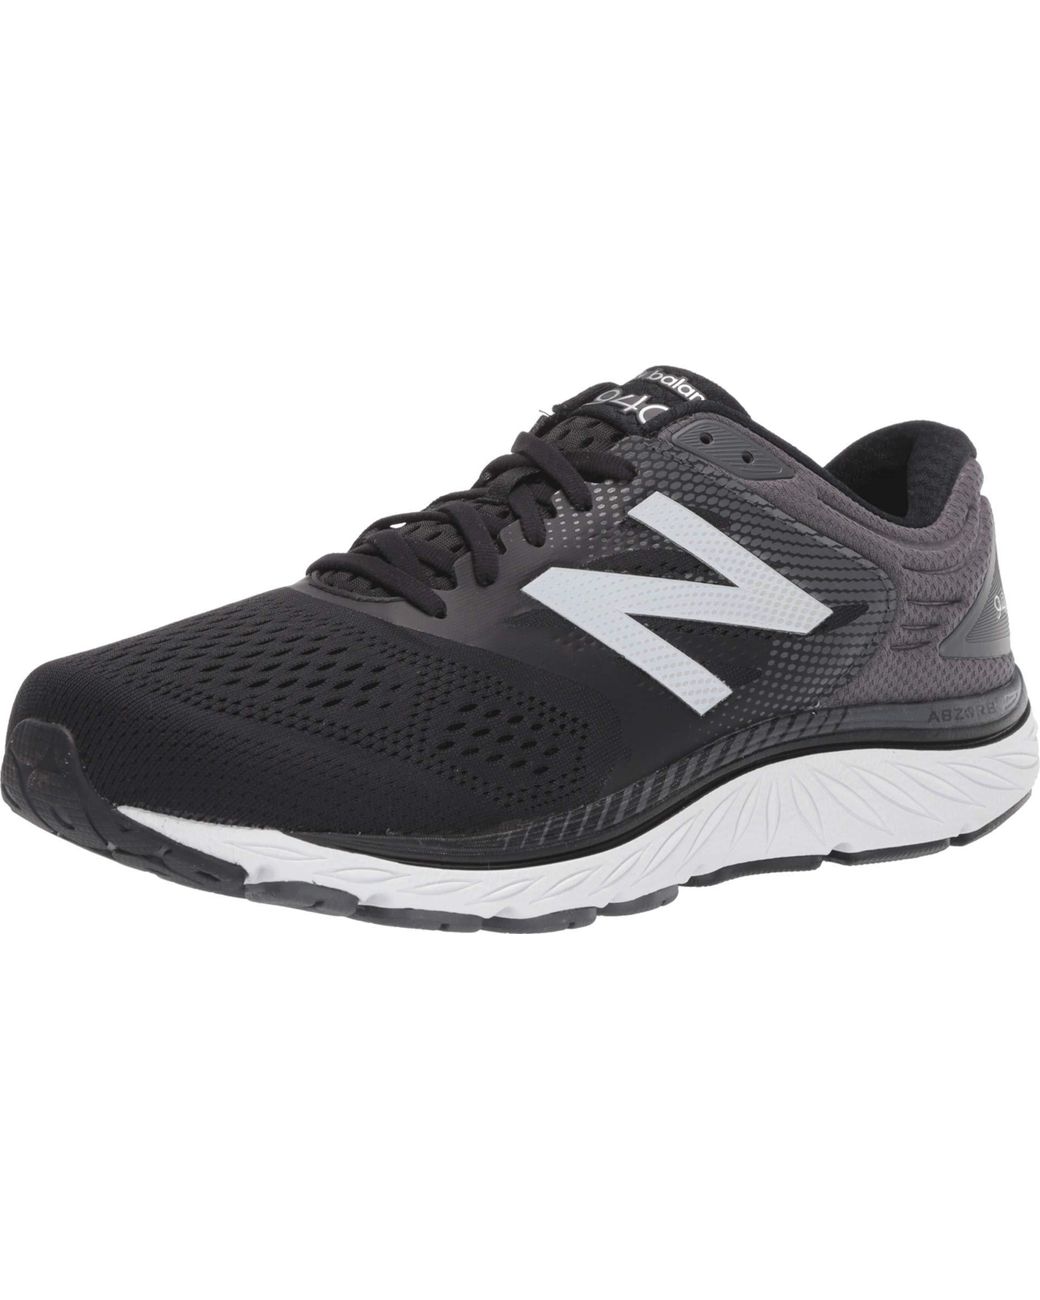 New Balance 940 V4 Running Shoe in Black for Men - Lyst